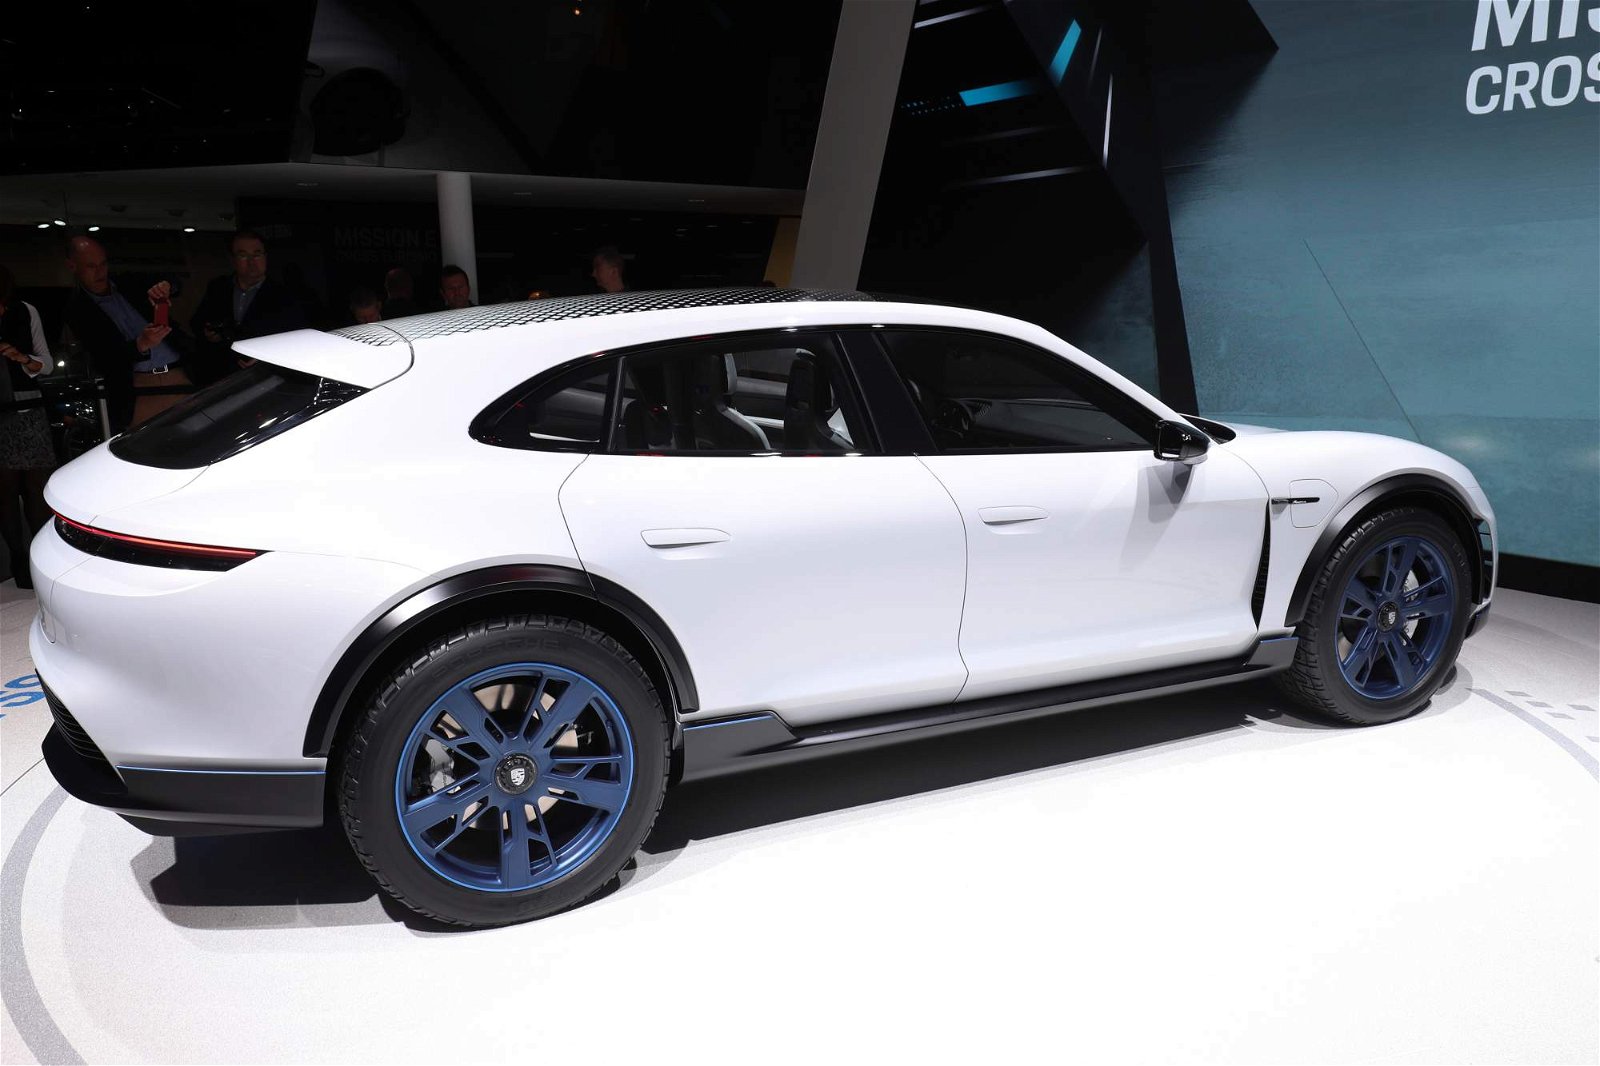 Porsche-Mission-E-Cross-Turismo-Concept-at-Geneva-Motor-Show-13